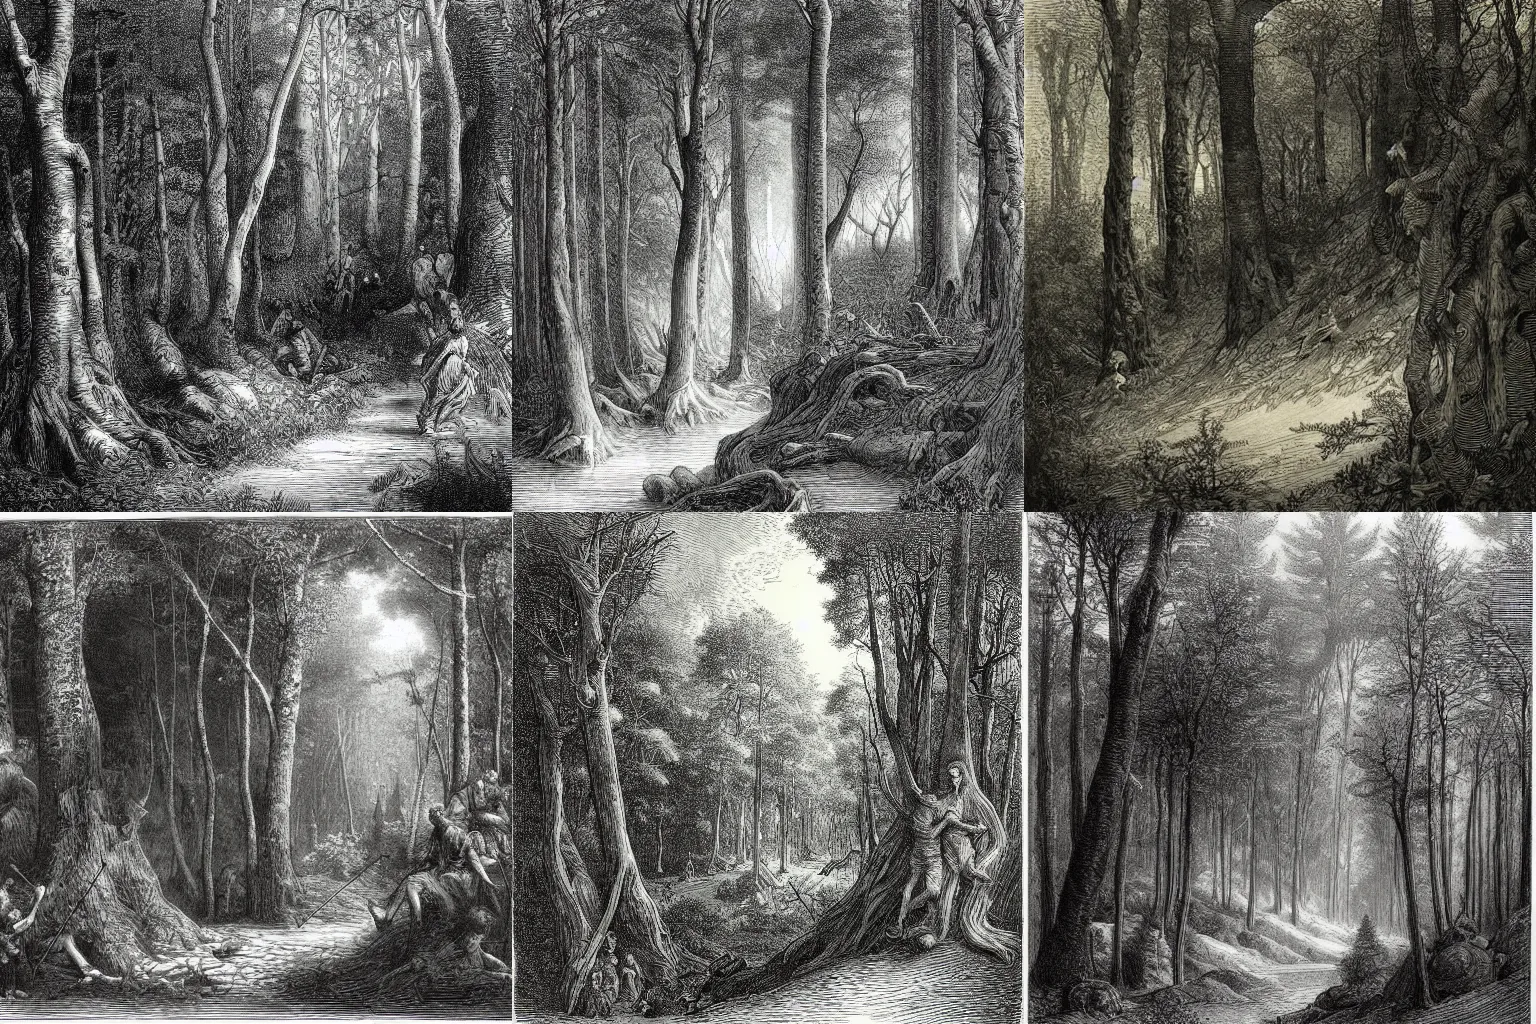 Prompt: forest scene, Gustave Doré engraving